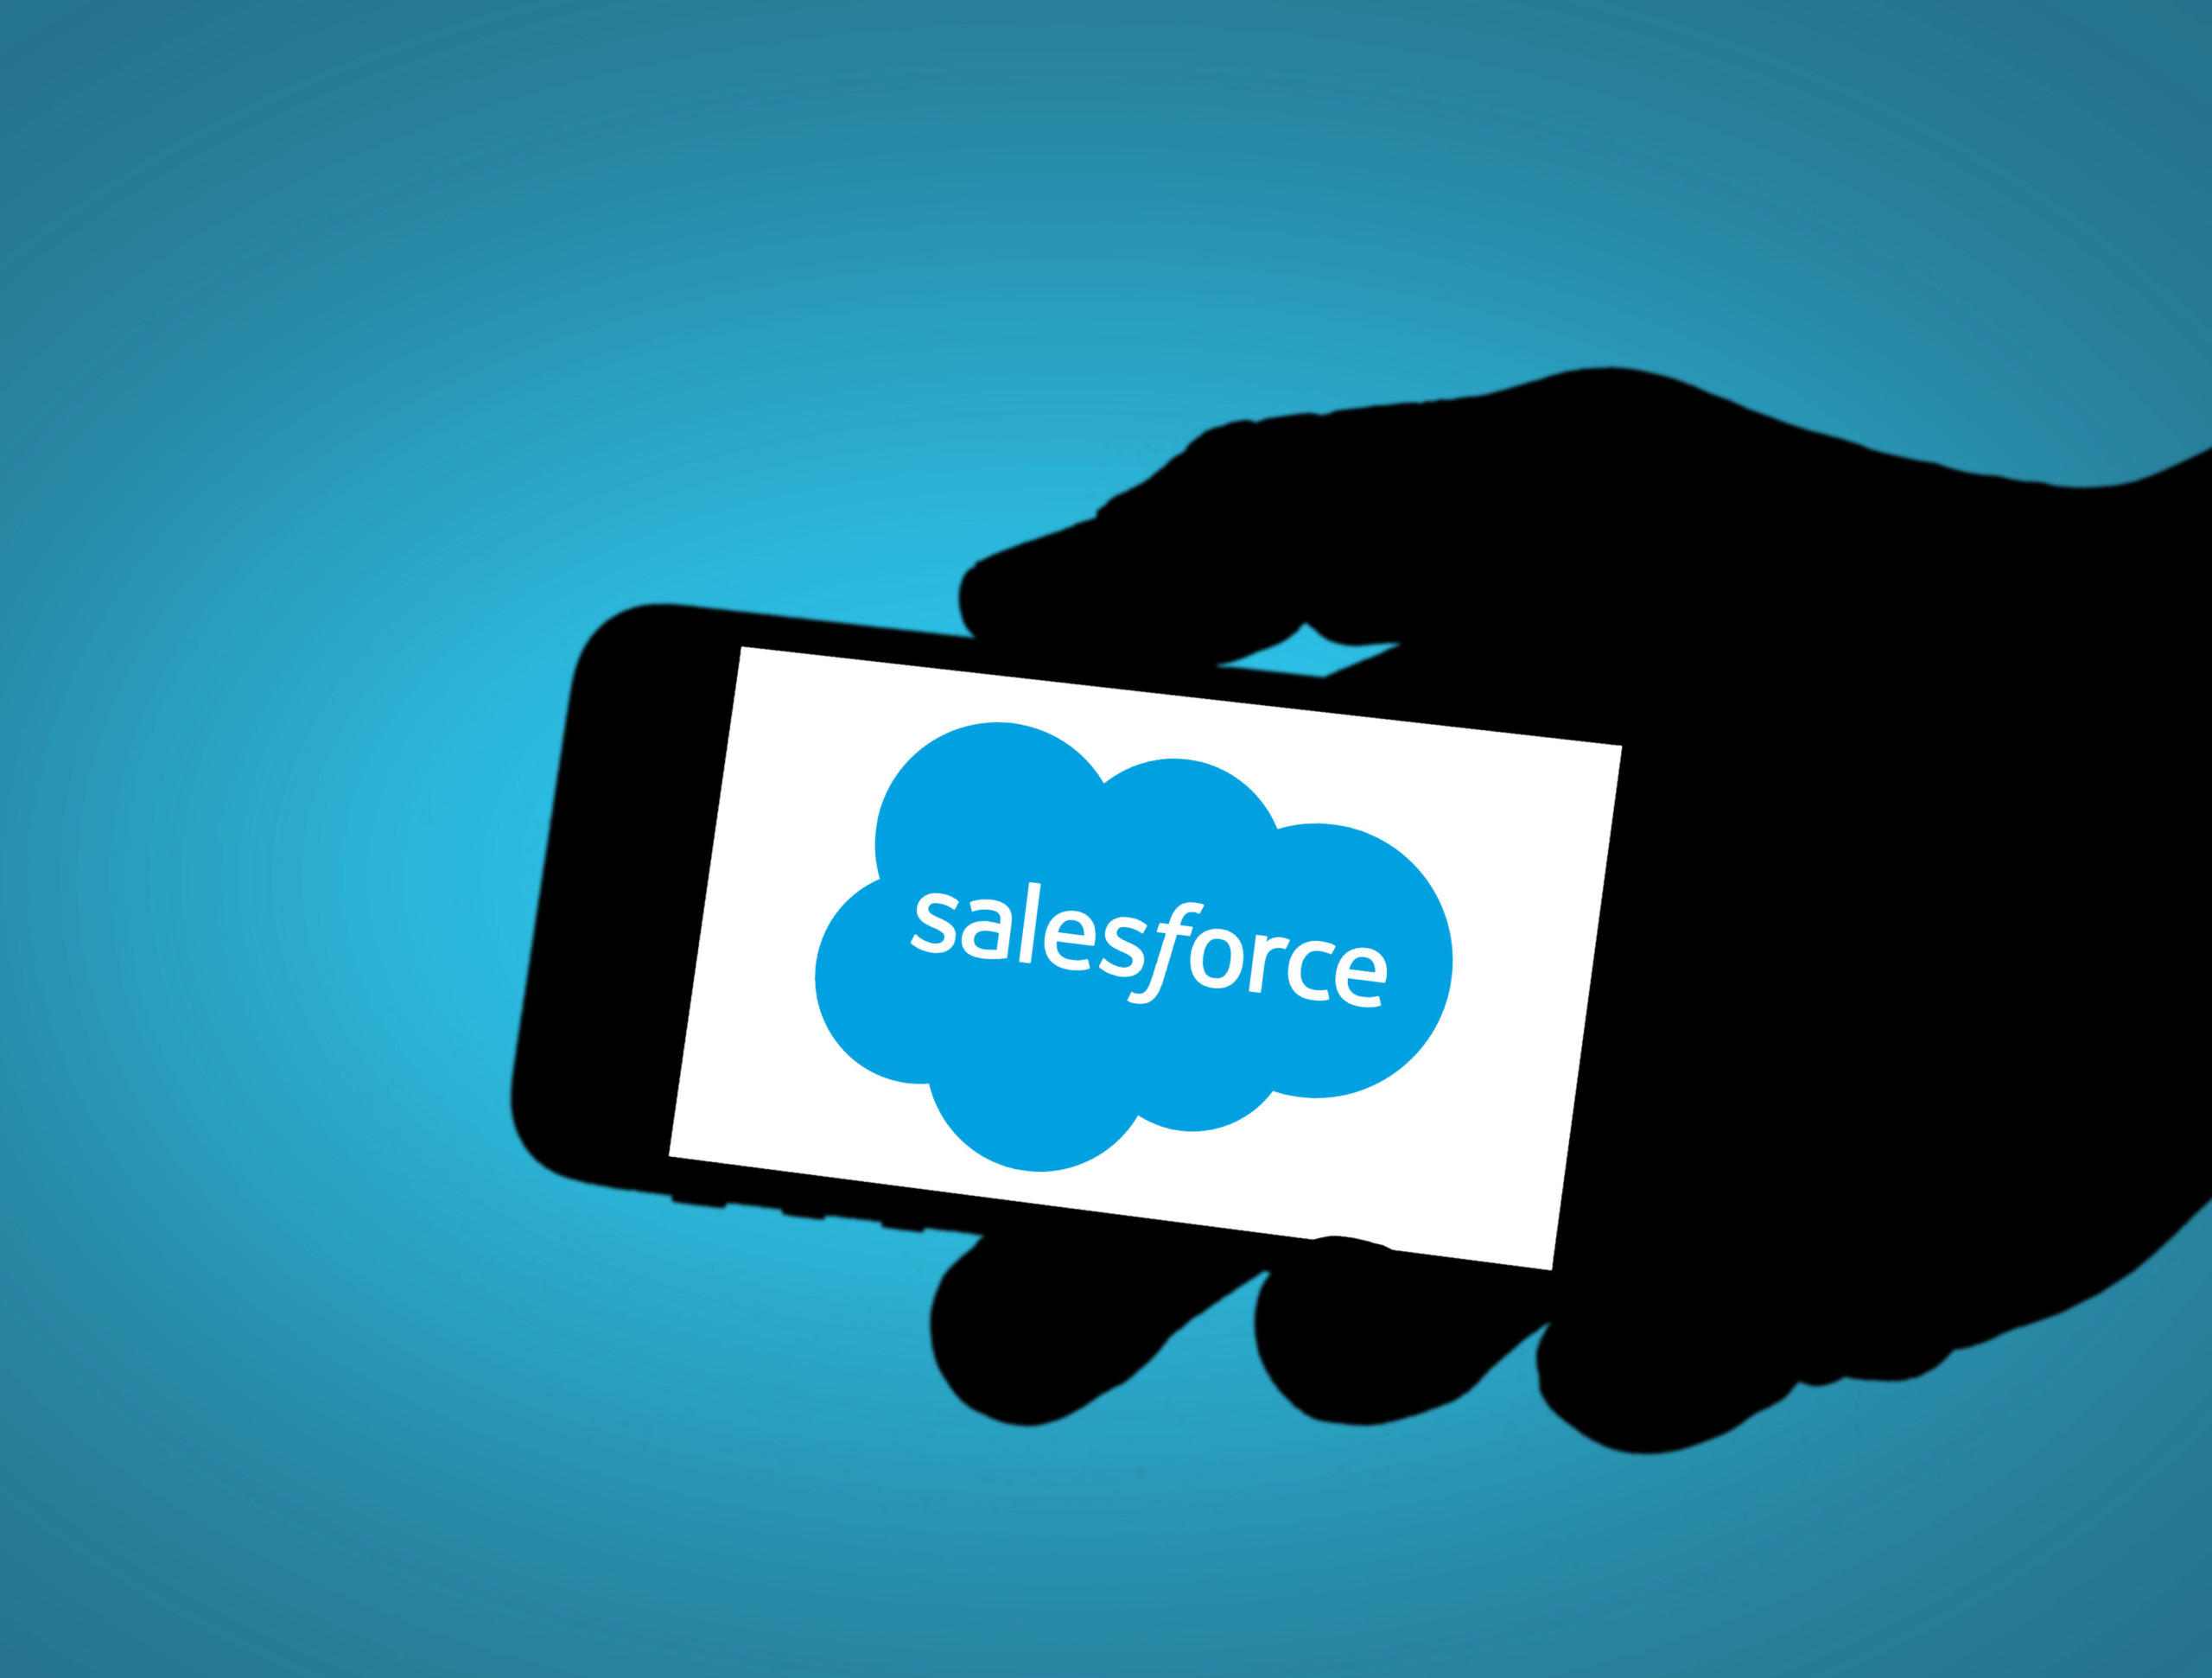 Salesforce stellt KI-Cloud-Angebot vor - Datensicherheit steht dabei im Vordergrund!